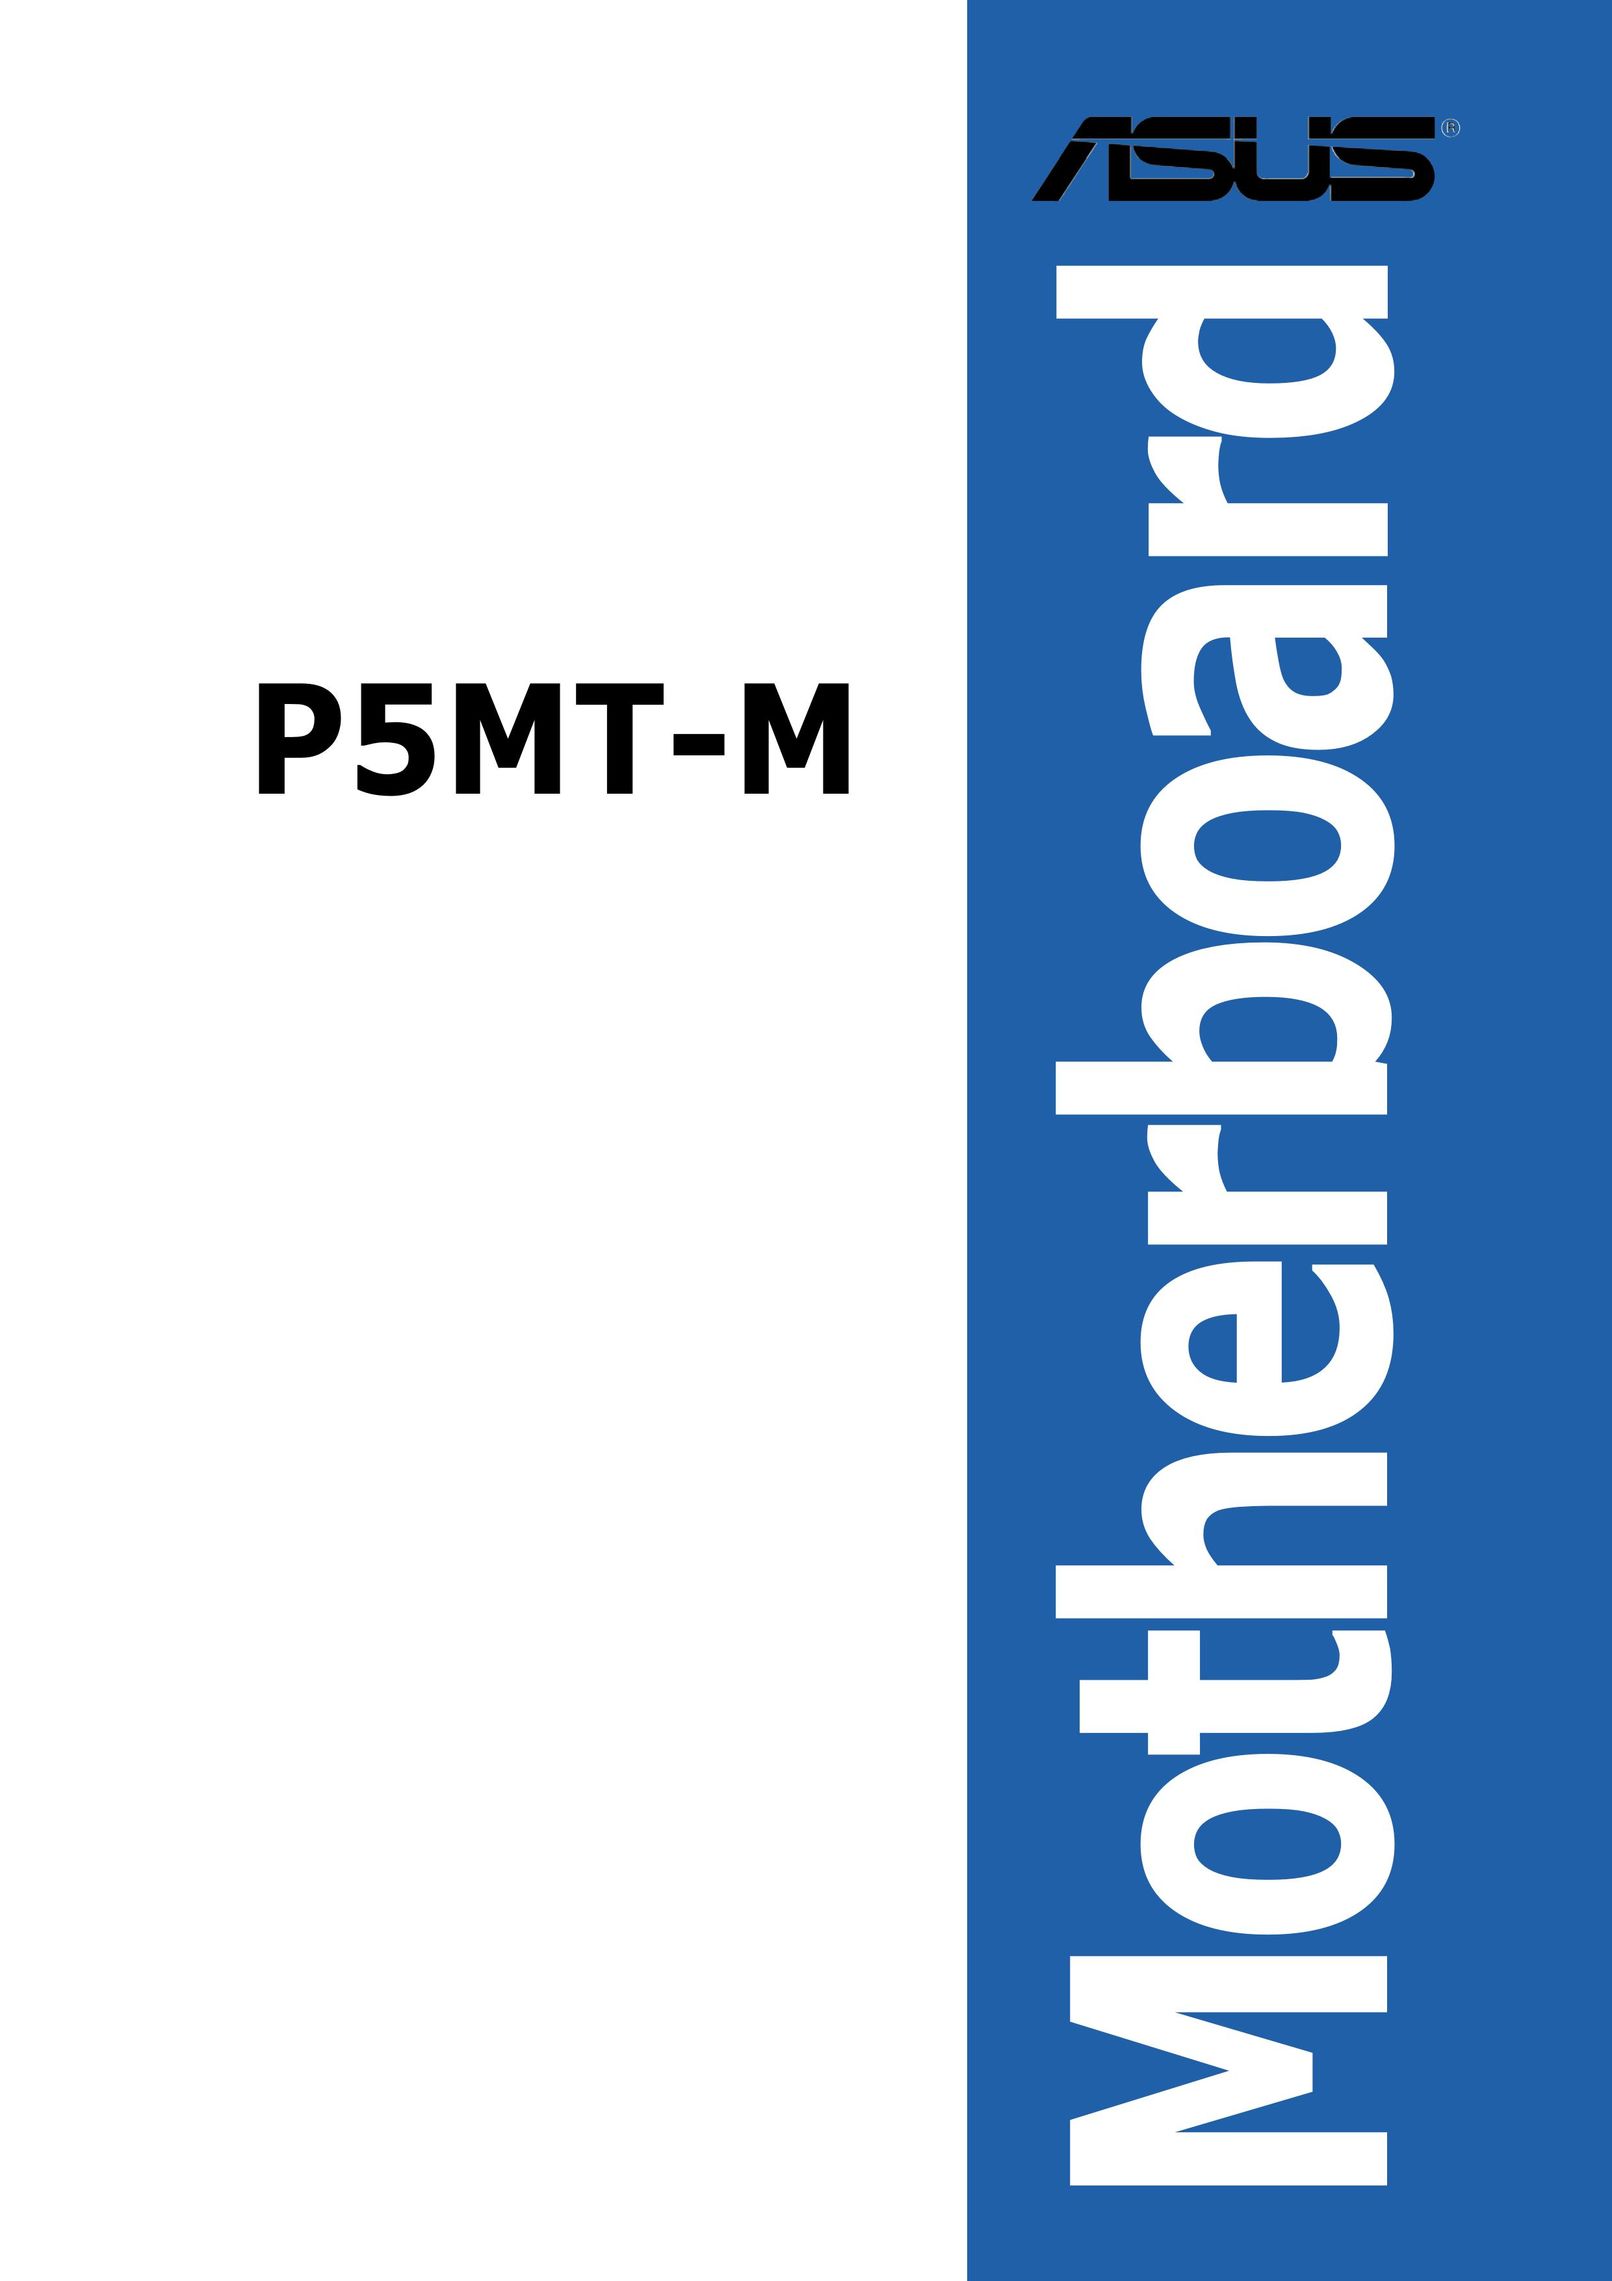 Asus P5MT-M Network Card User Manual